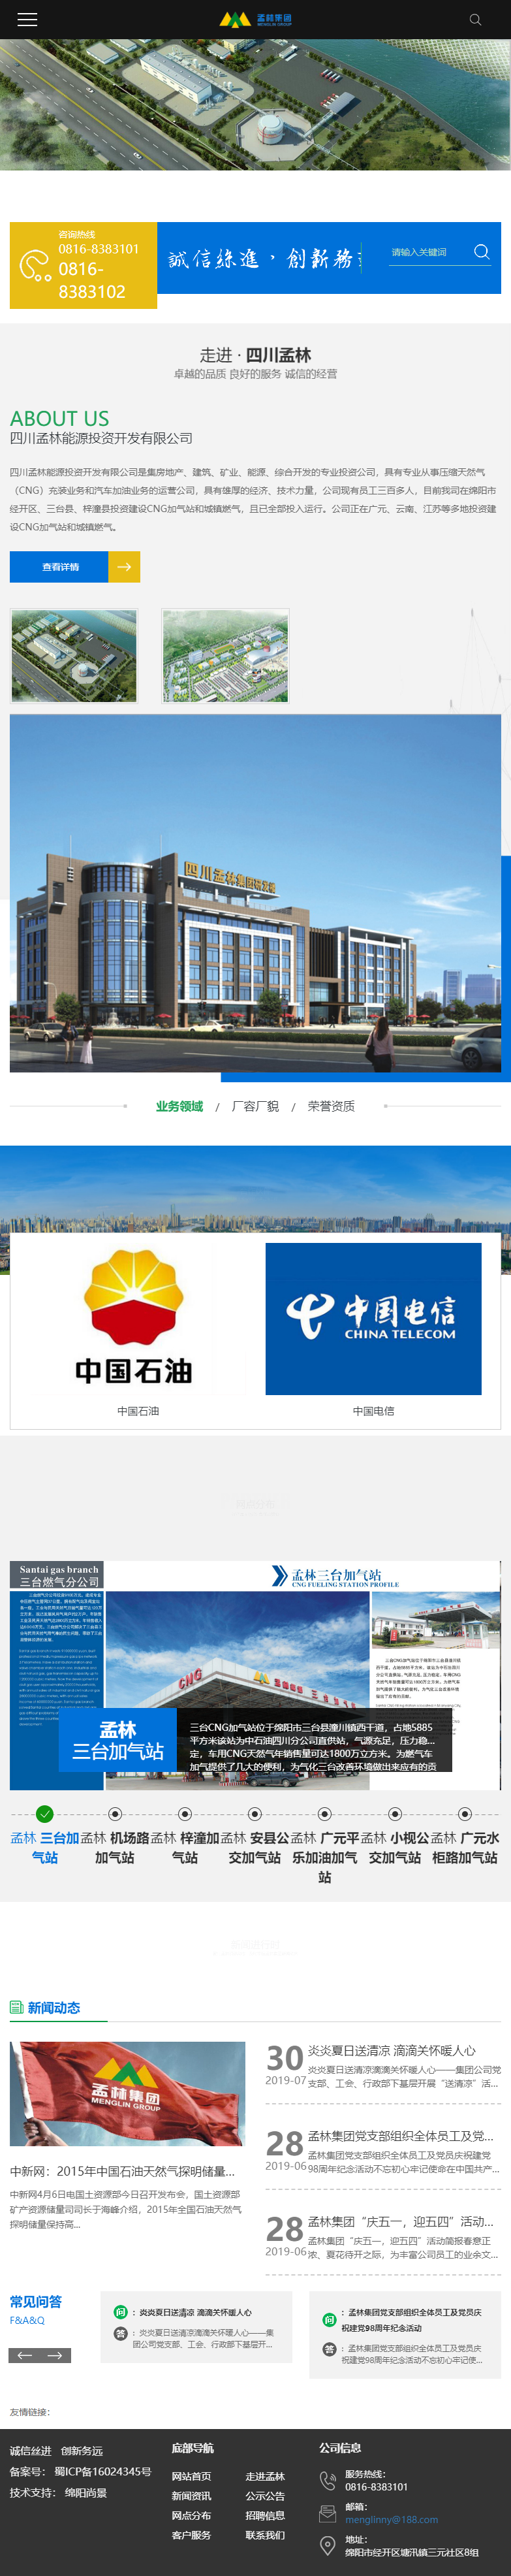 四川孟林能源投资开发有限公司网站案例